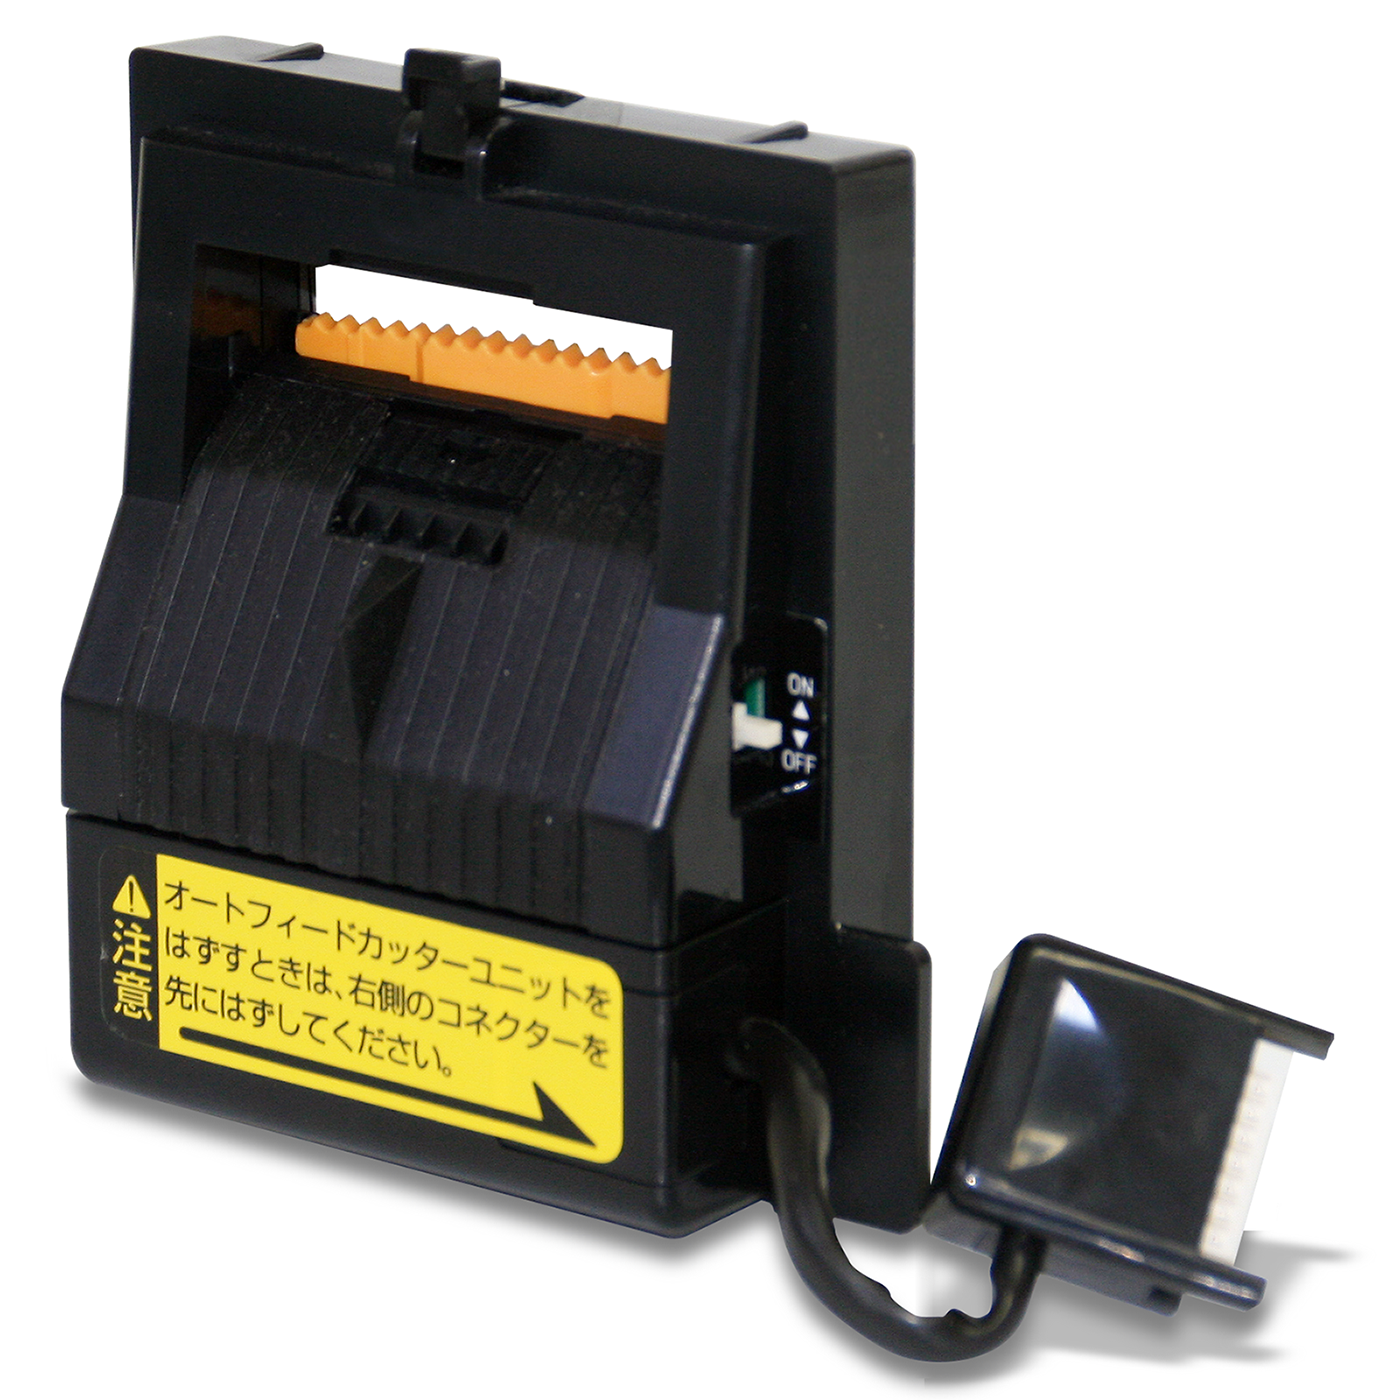 季節のおすすめ商品 電動テープカッター オートフィードカッターユニット 取り替え用 M-1000替刃